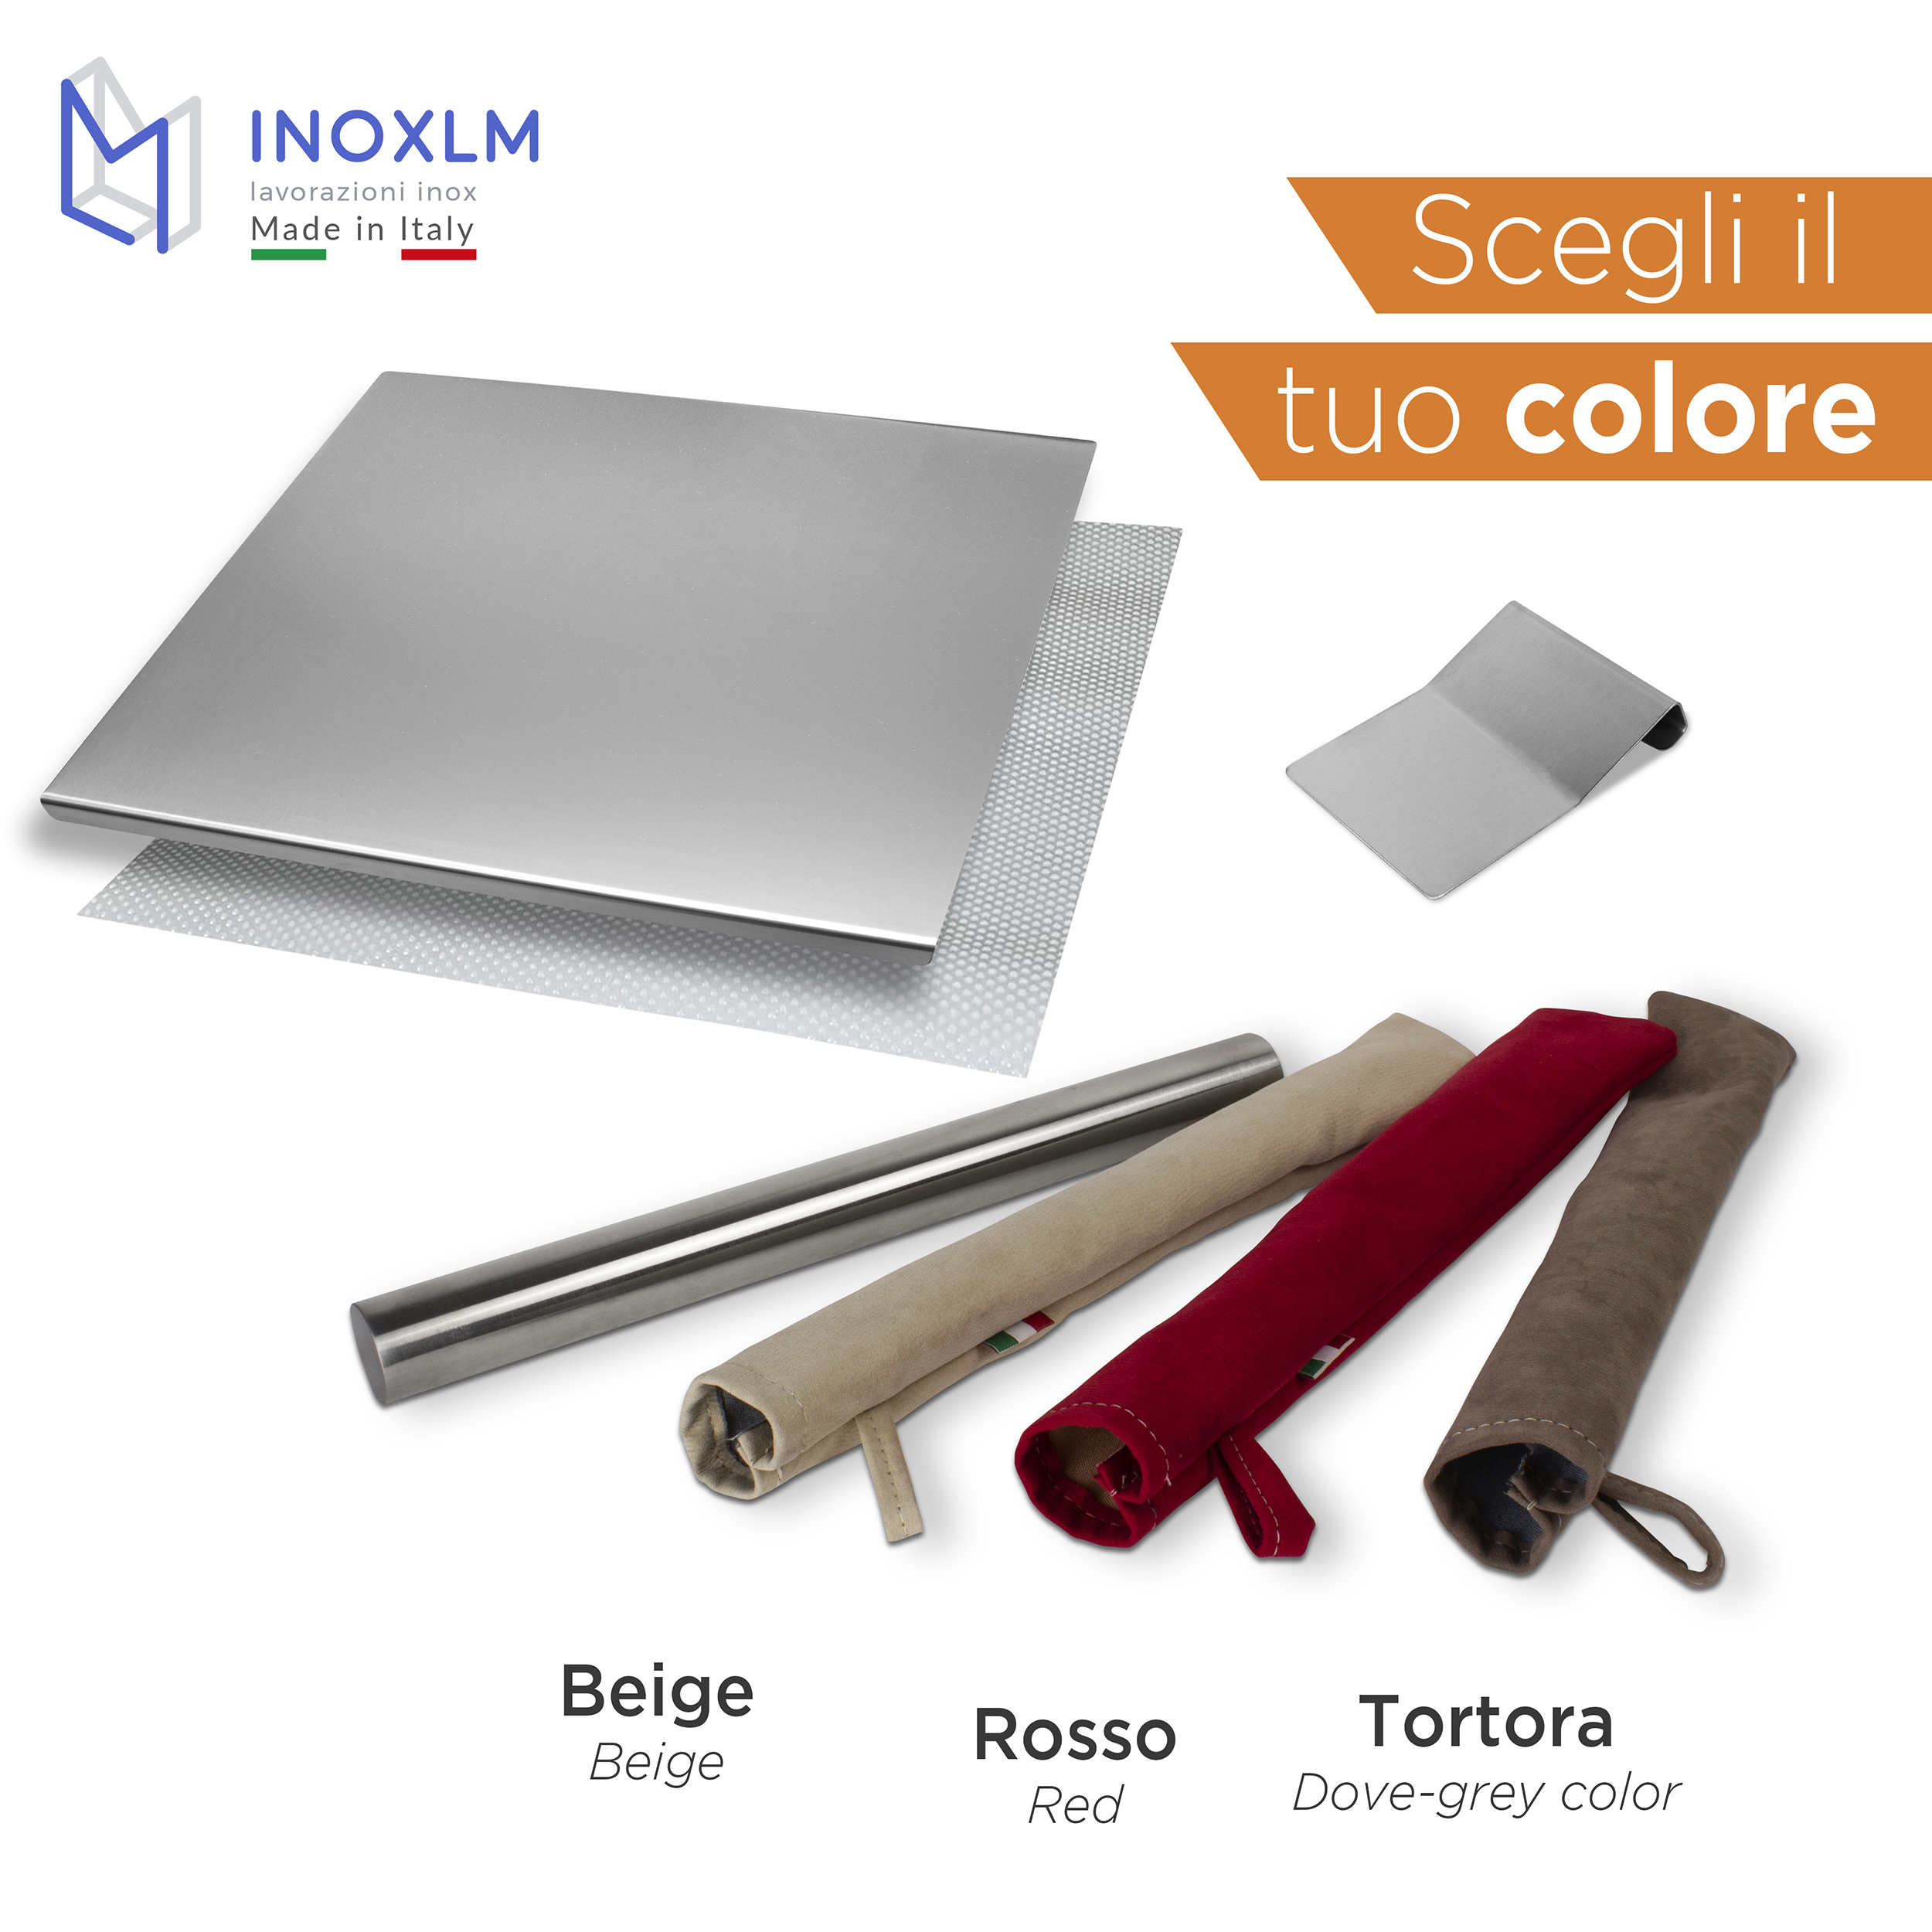 BOX Tagliere / Spianatoia Acquario + Tarocco / Spatola + Mattarello in acciaio  inox - Inoxlm